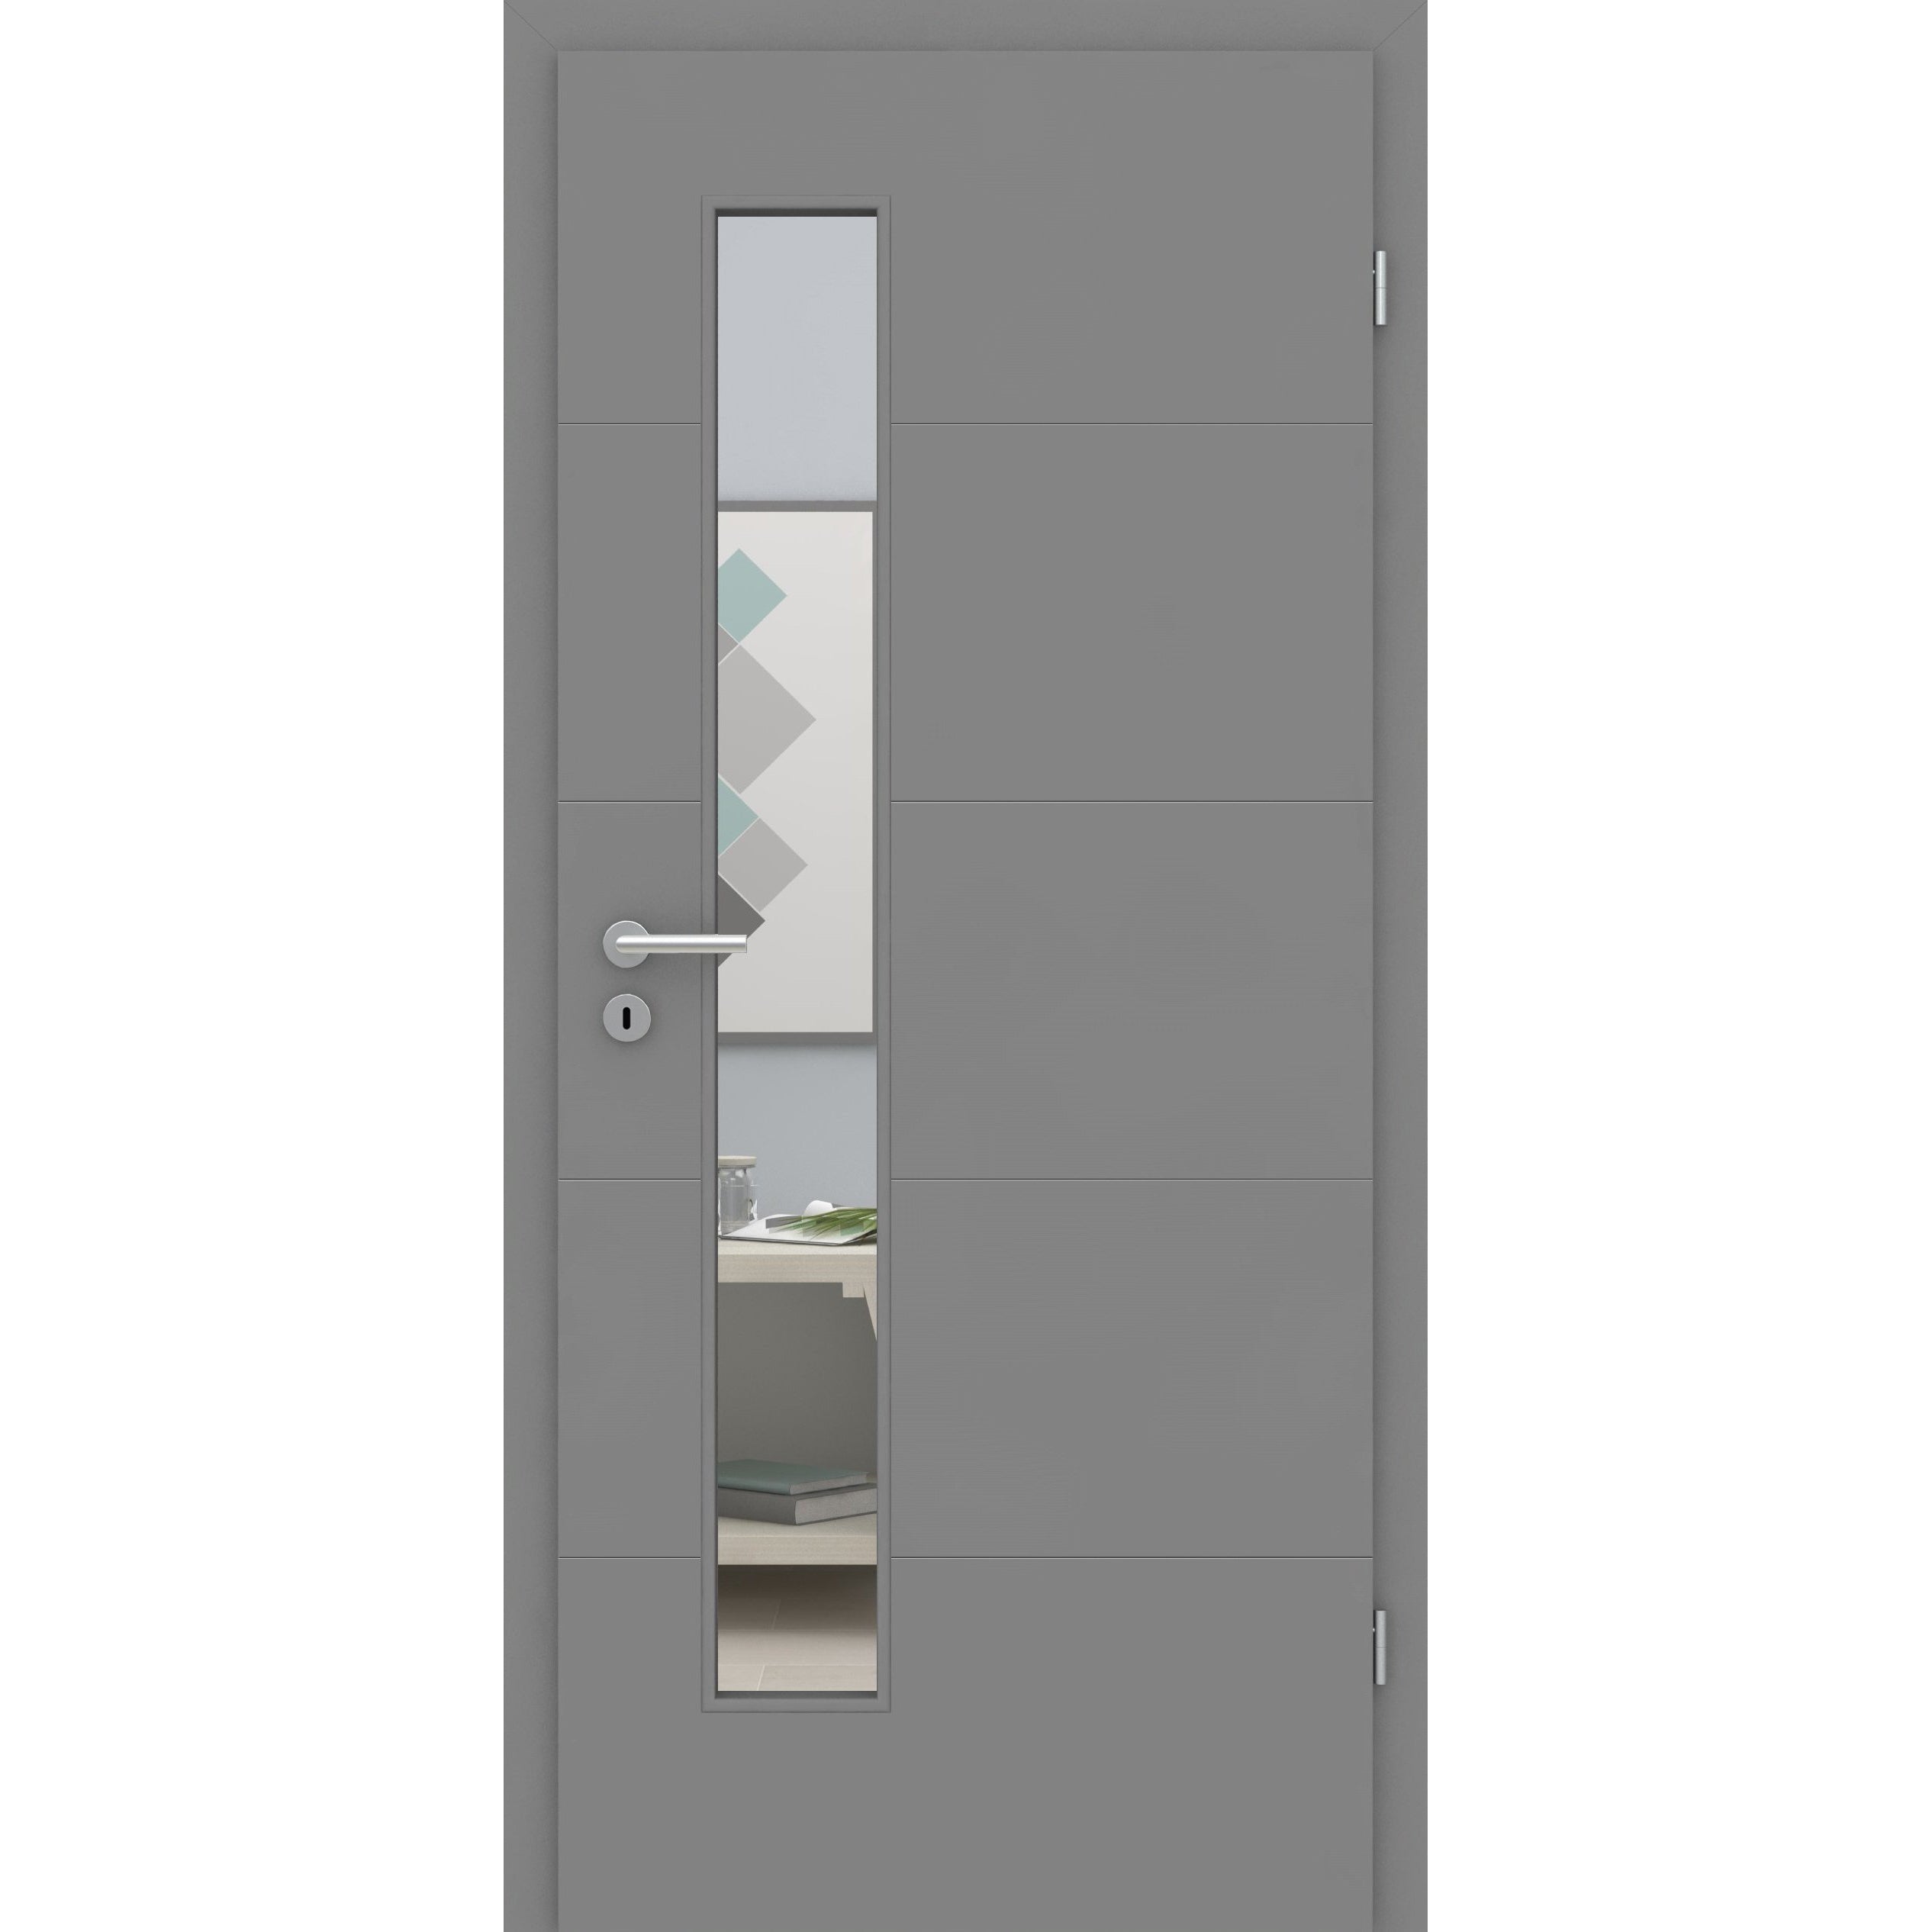 Zimmertür mit Lichtausschnitt grau 4 Rillen quer Designkante - Modell Designtür Q47LAS